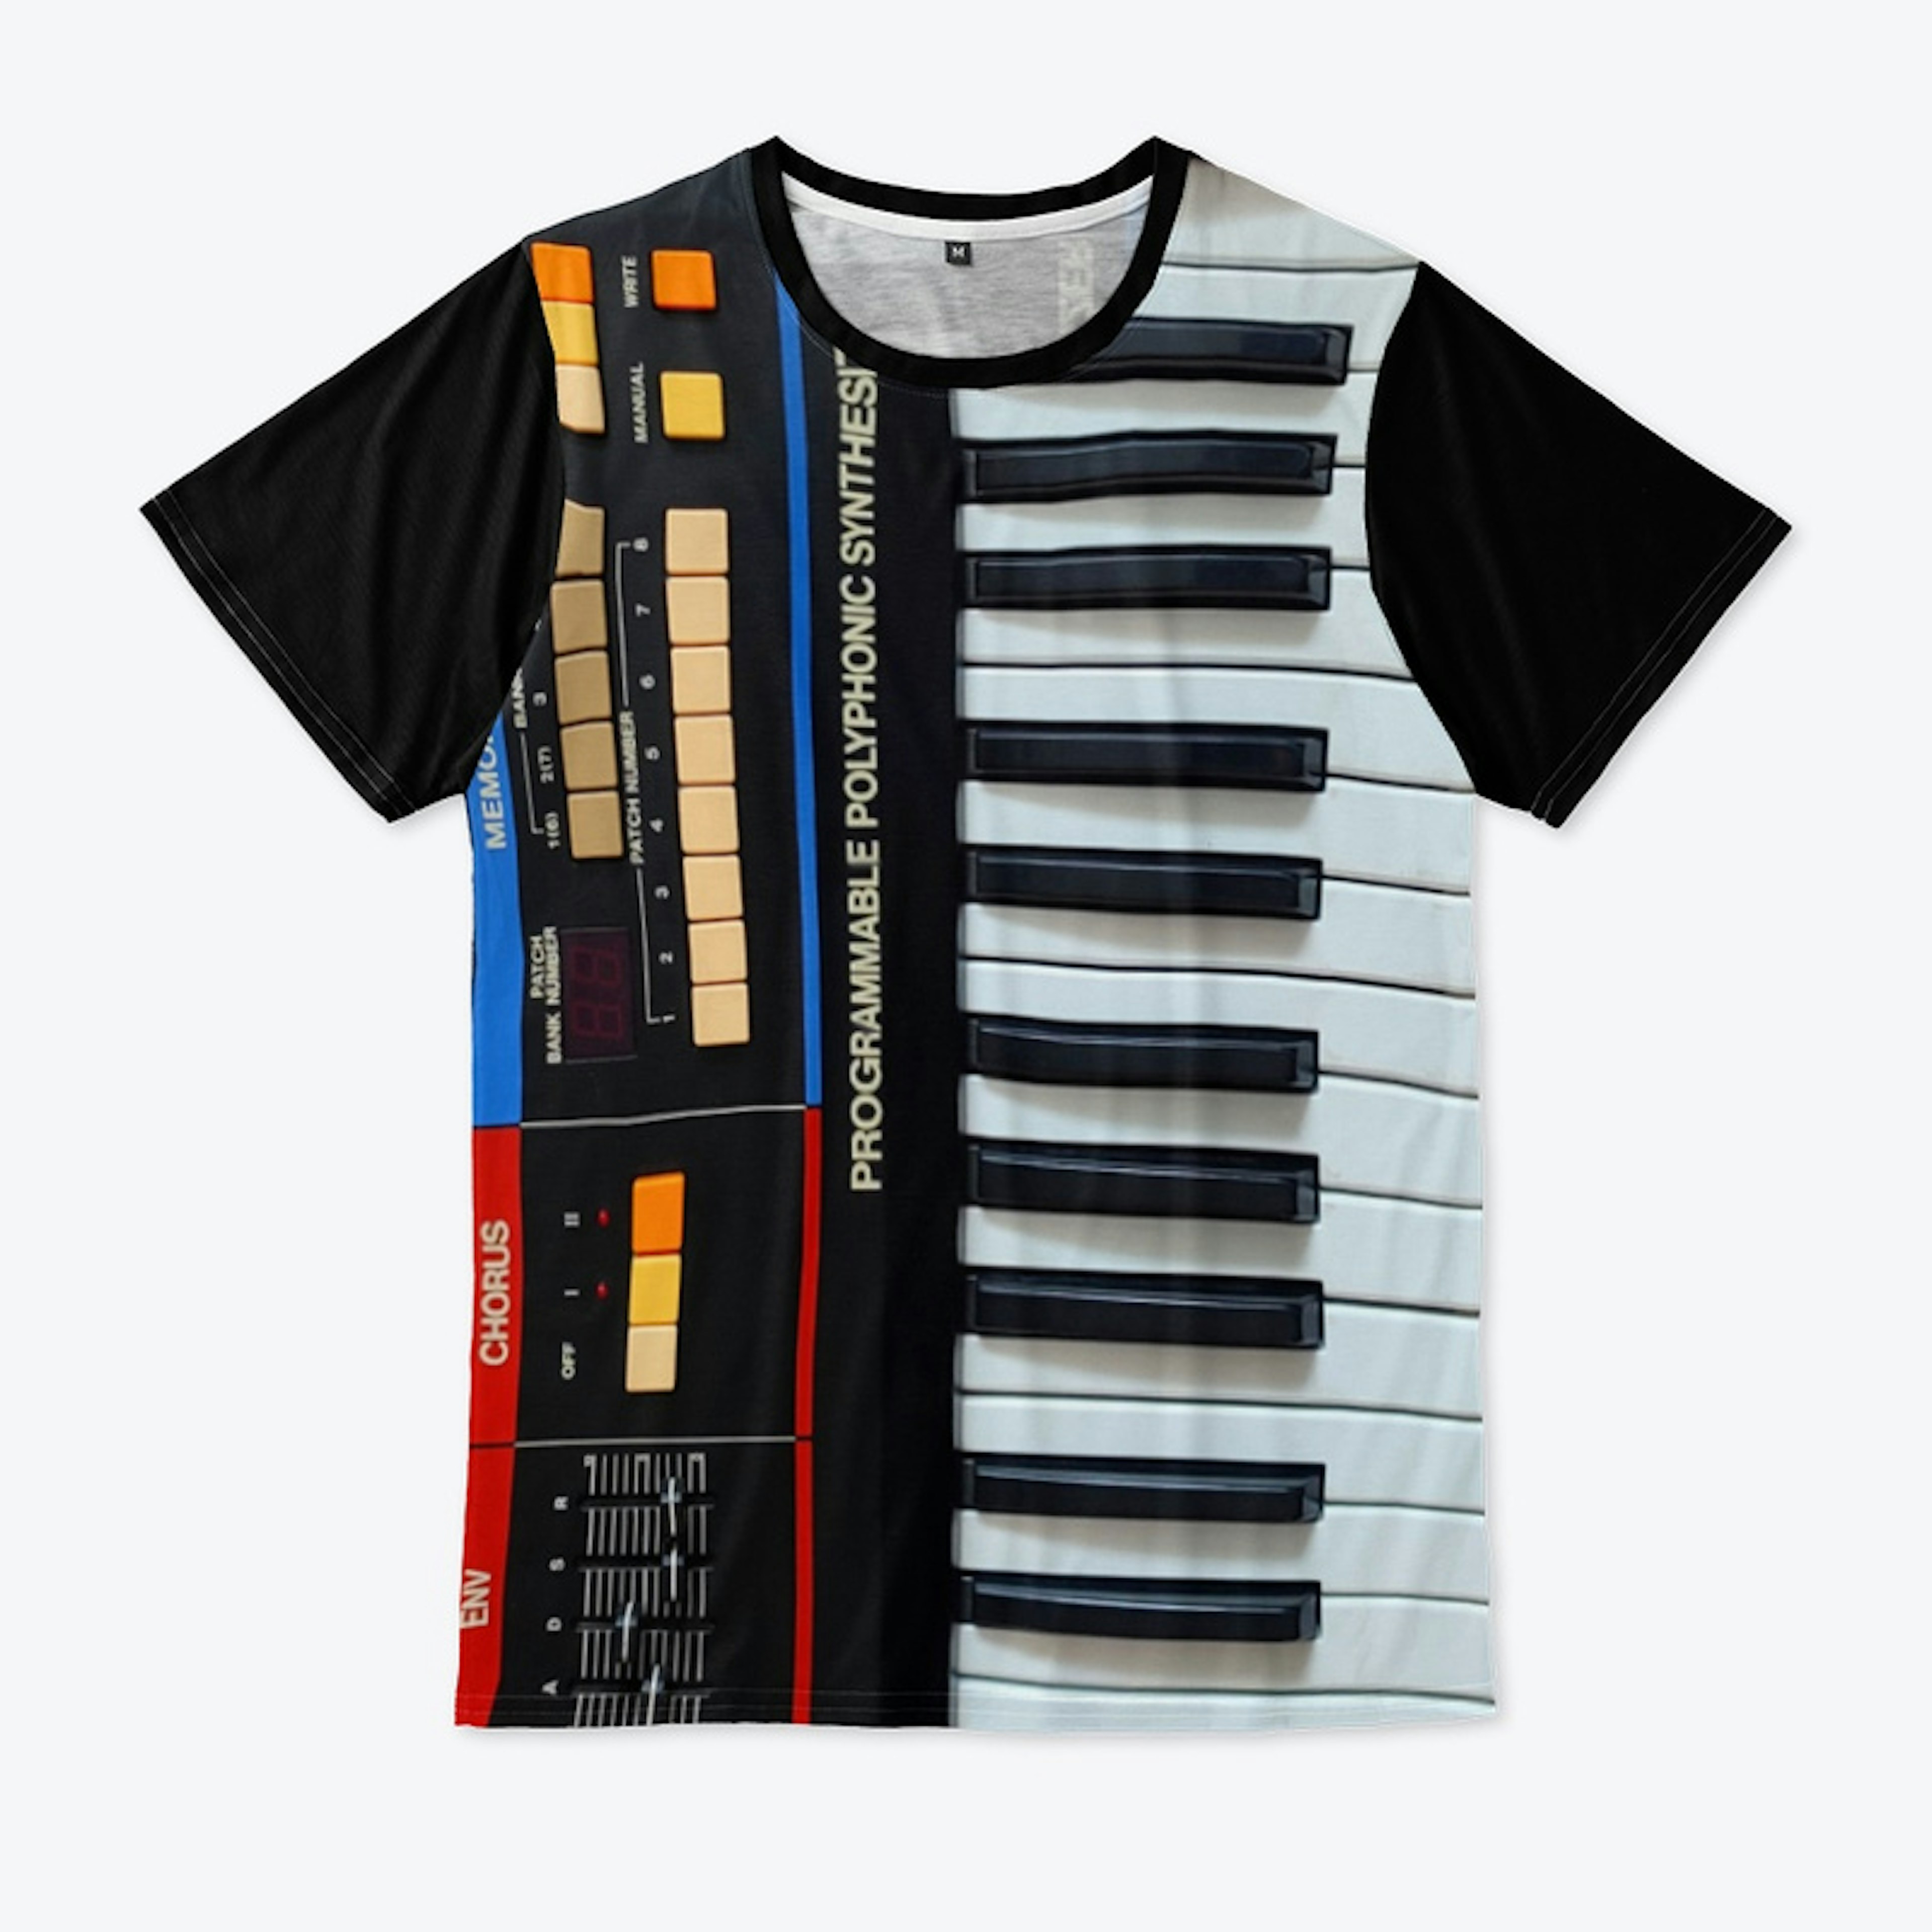 Vintage Synthesizer Shirt